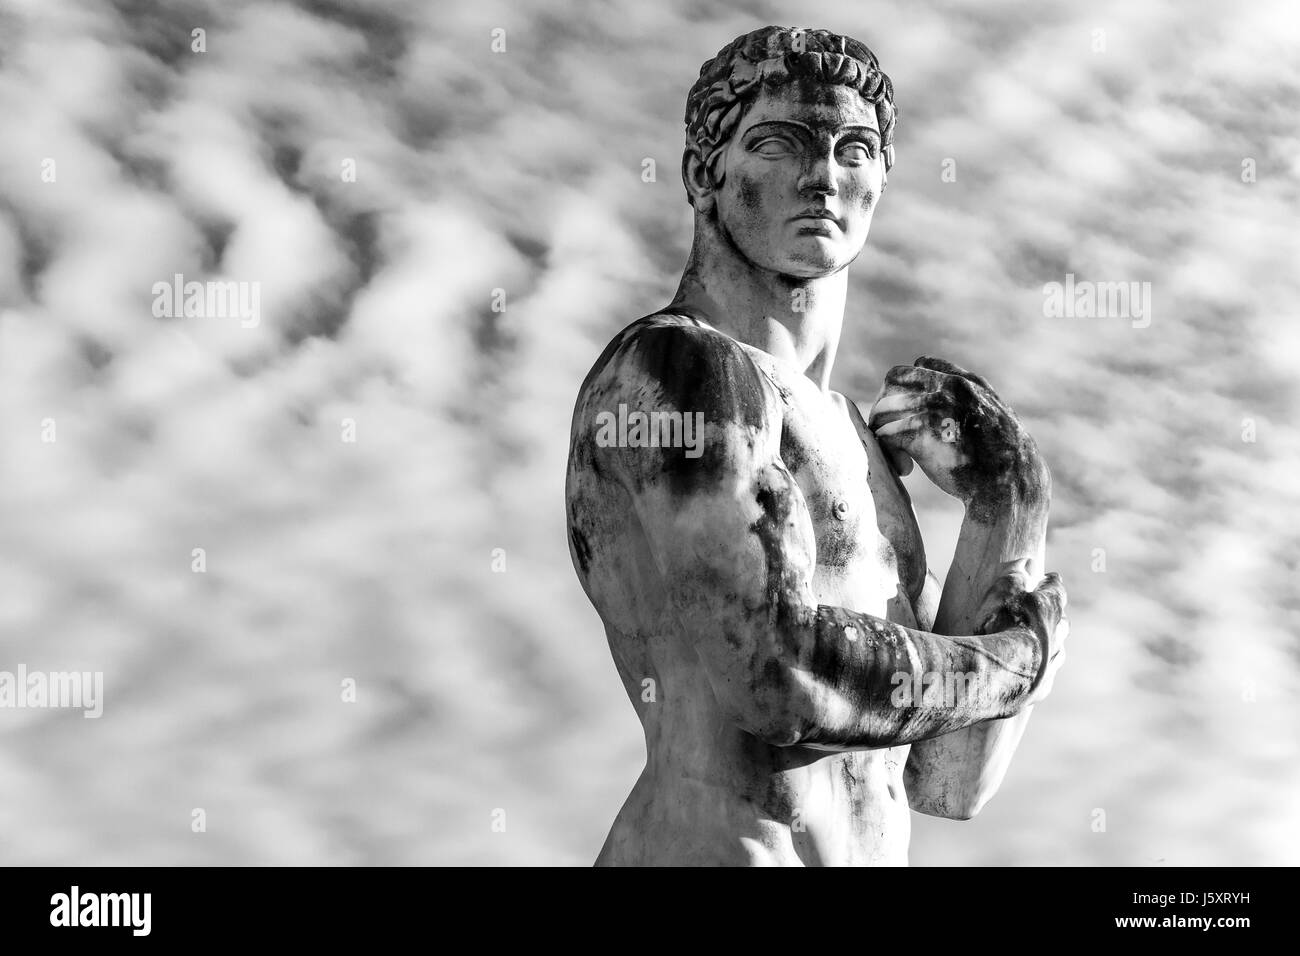 En idéalisé statue d'un athlète à la Rome Stadio dei Marmi ciel dramatique Banque D'Images